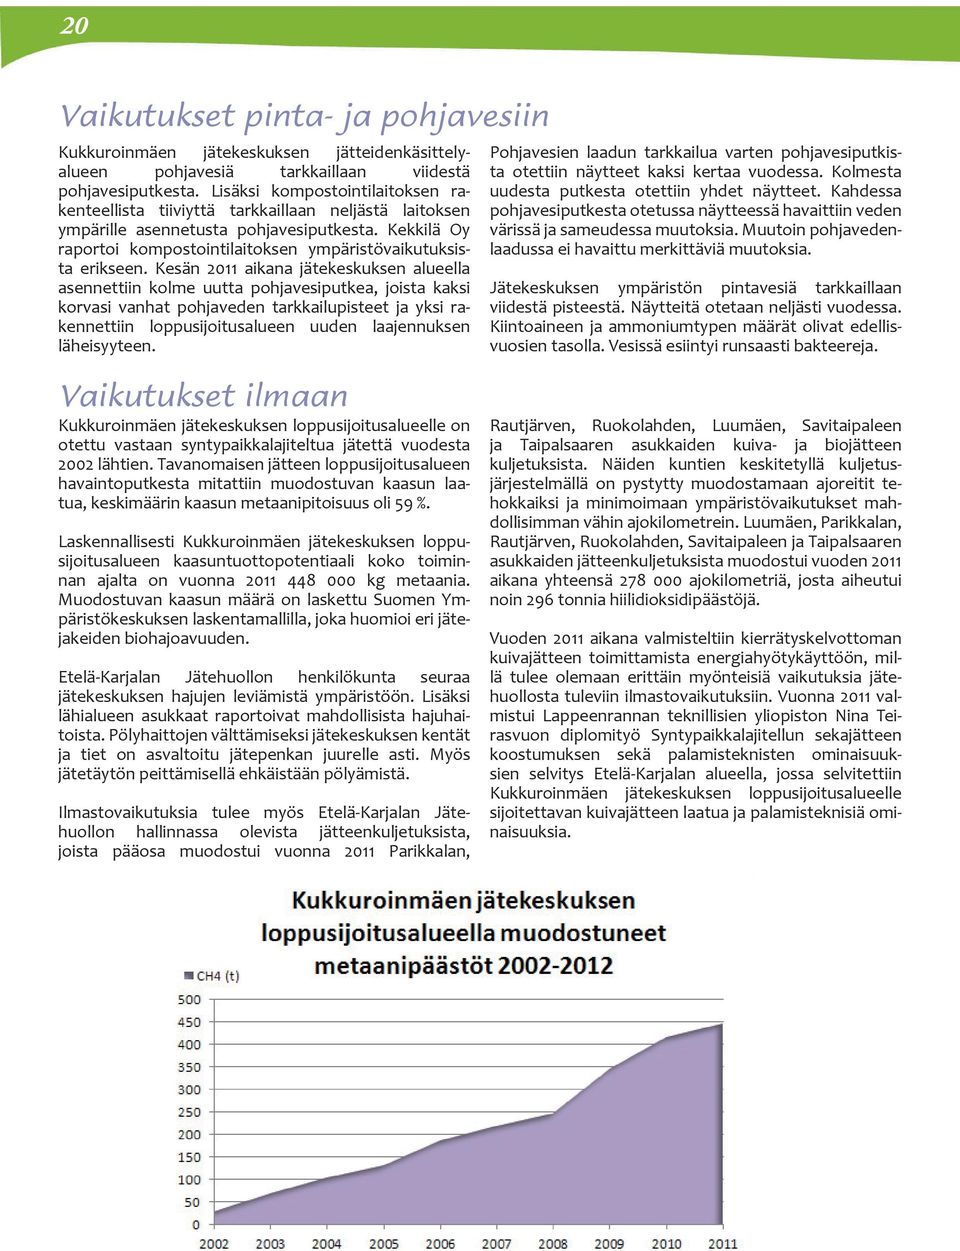 Kekkilä Oy raportoi kompostointilaitoksen ympäristövaikutuksista erikseen.